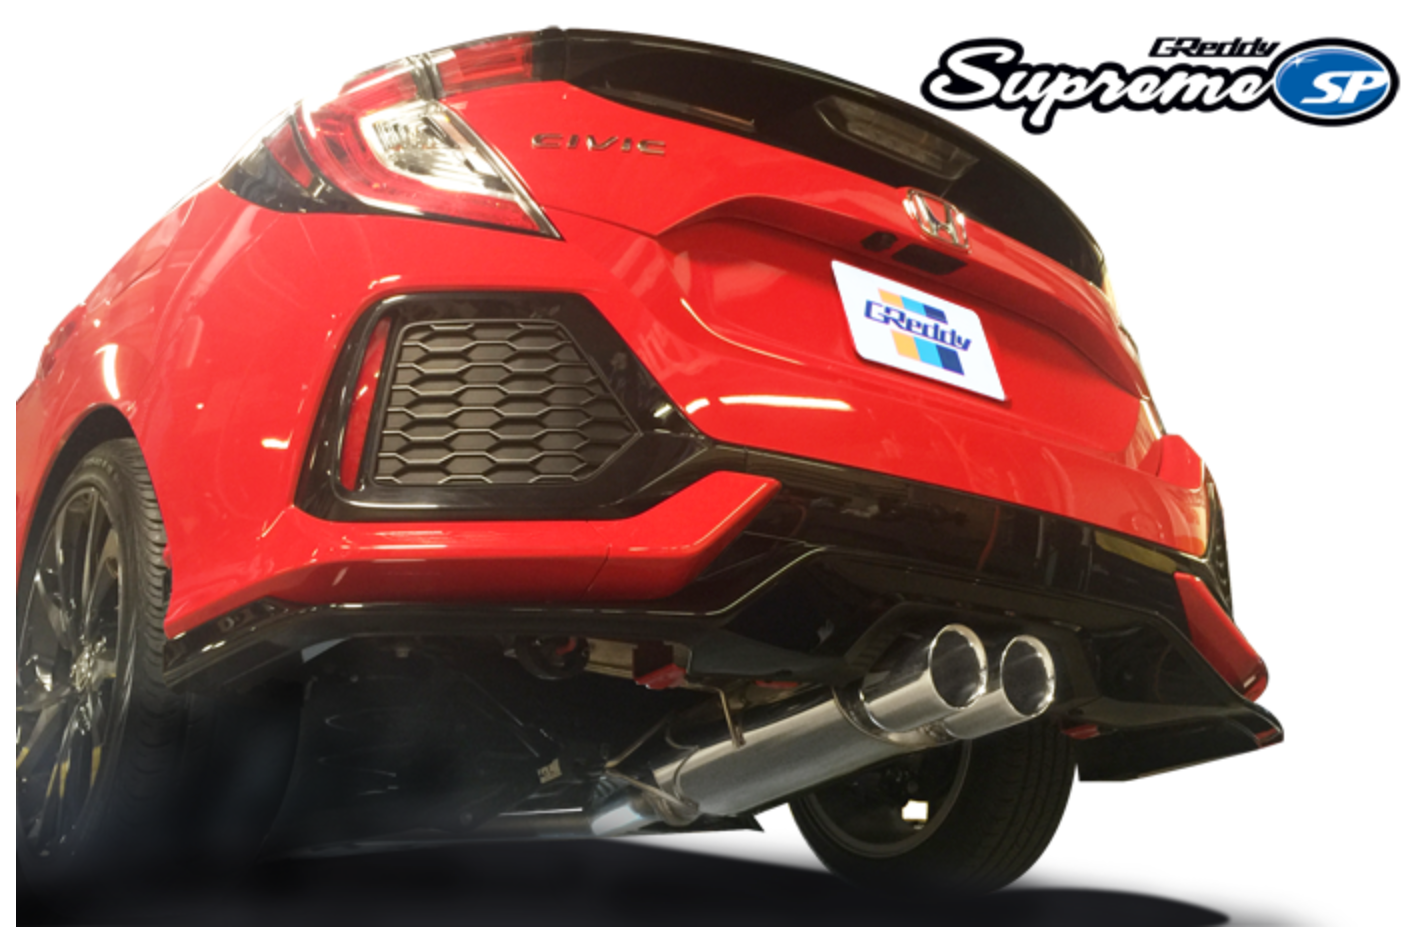 Greddy Supreme Sp Exhaust 17 Up Honda Civic Sport Hatchback Turbo F Darkside Motoring